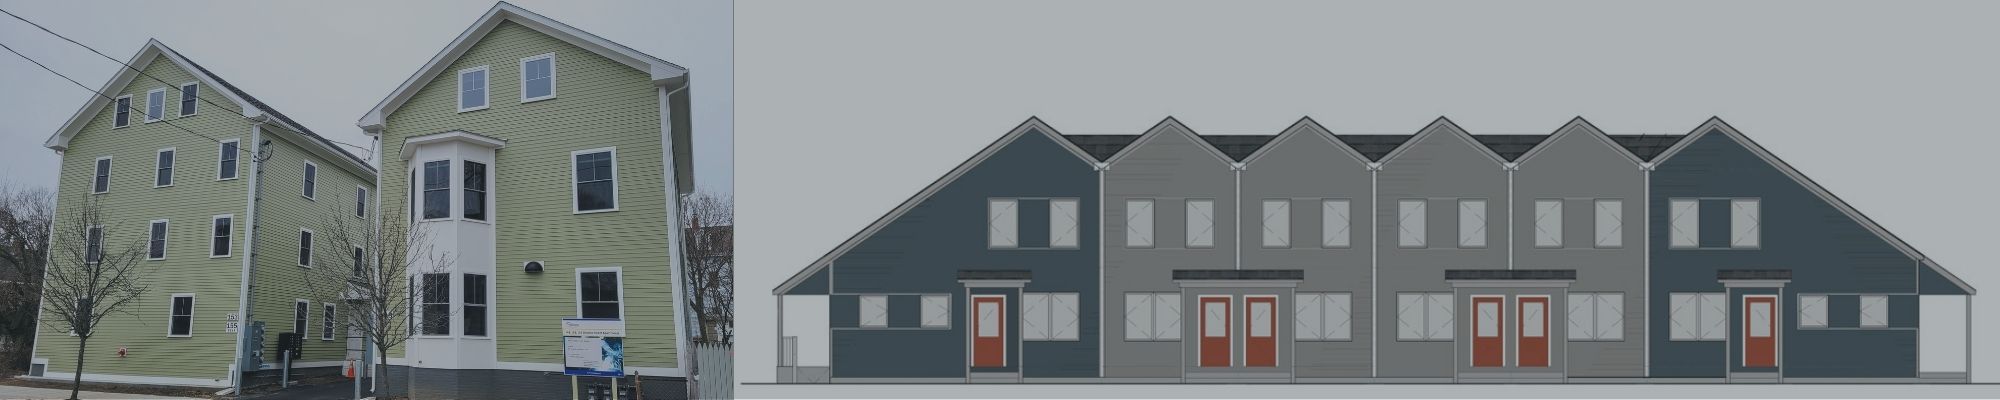 Boston Globe: ONE Neighborhood Builders presenta nuevas promociones de viviendas asequibles en Providence